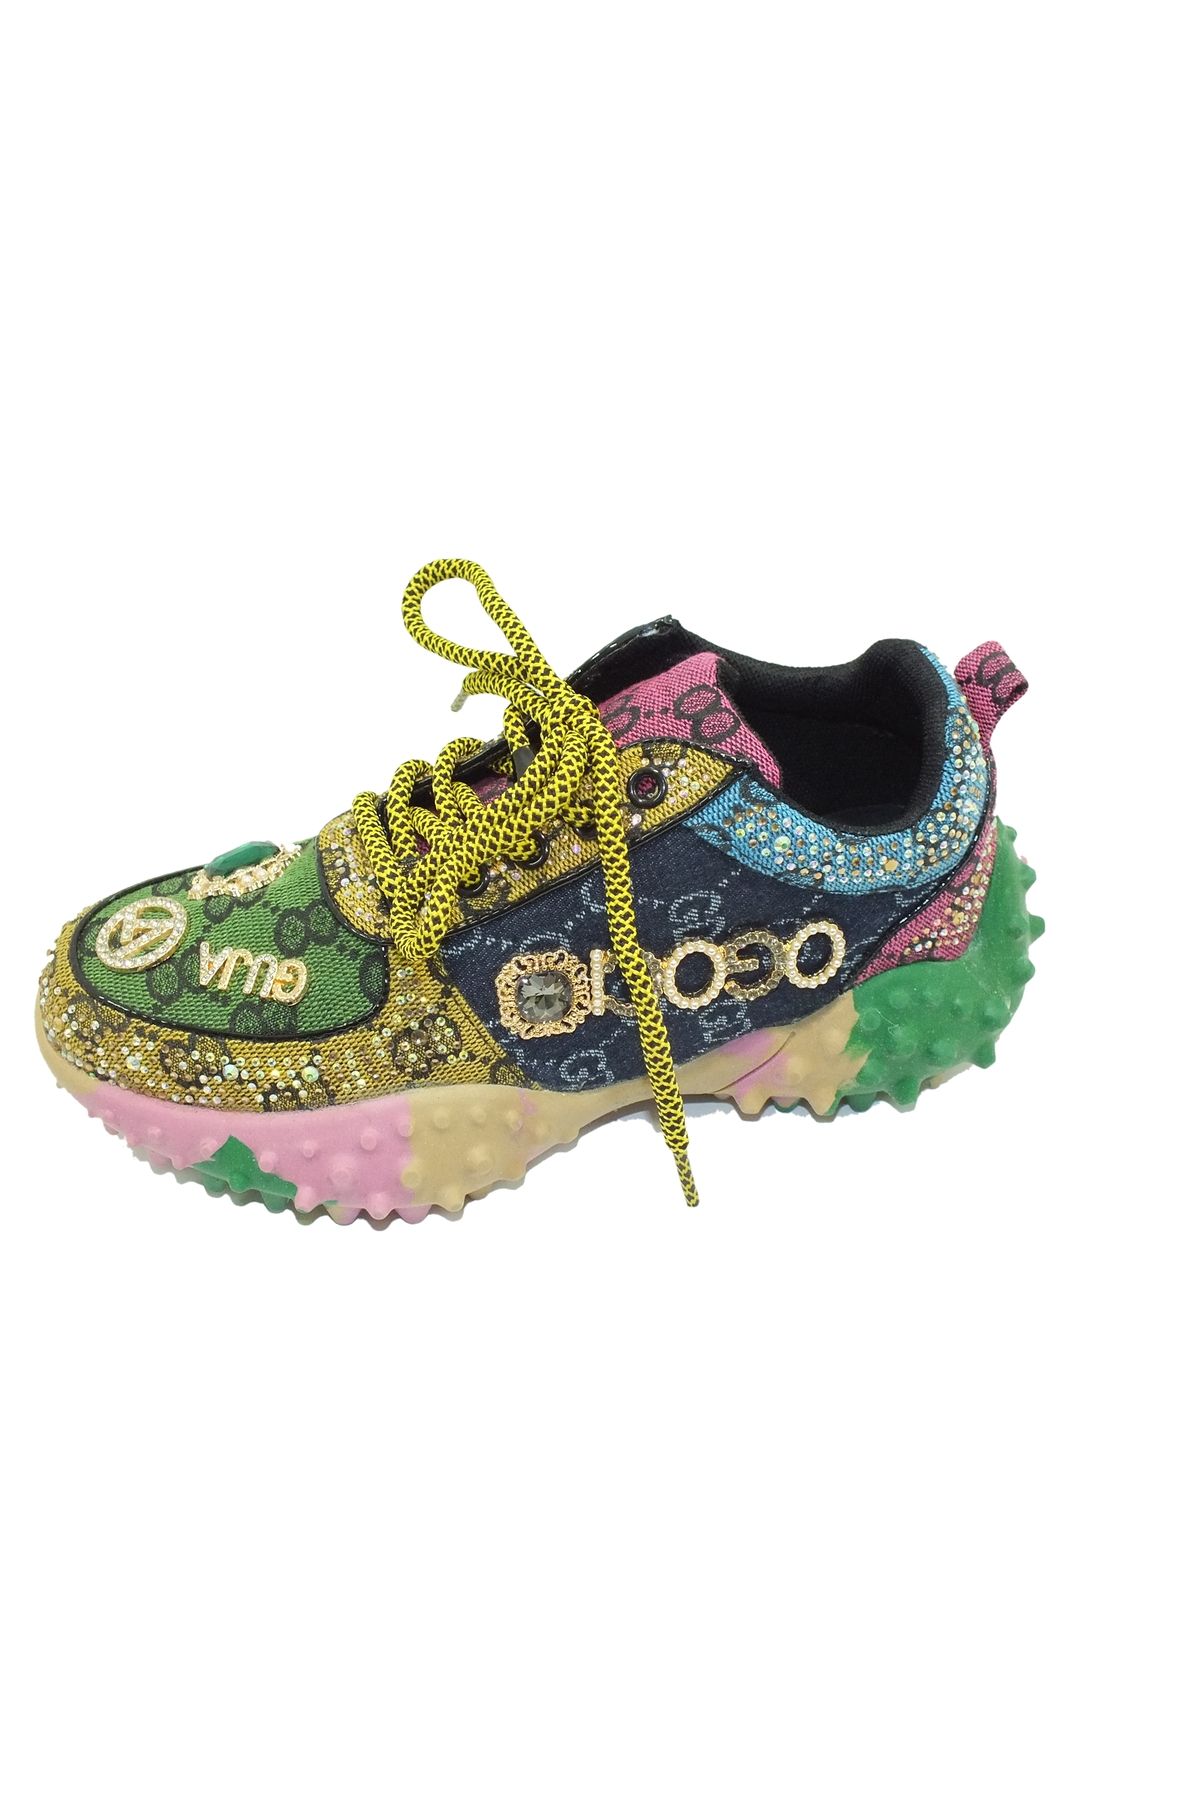 Guja Taşlı rengarenk ayakkabı ( kalıbı 1 numara küçüktür )